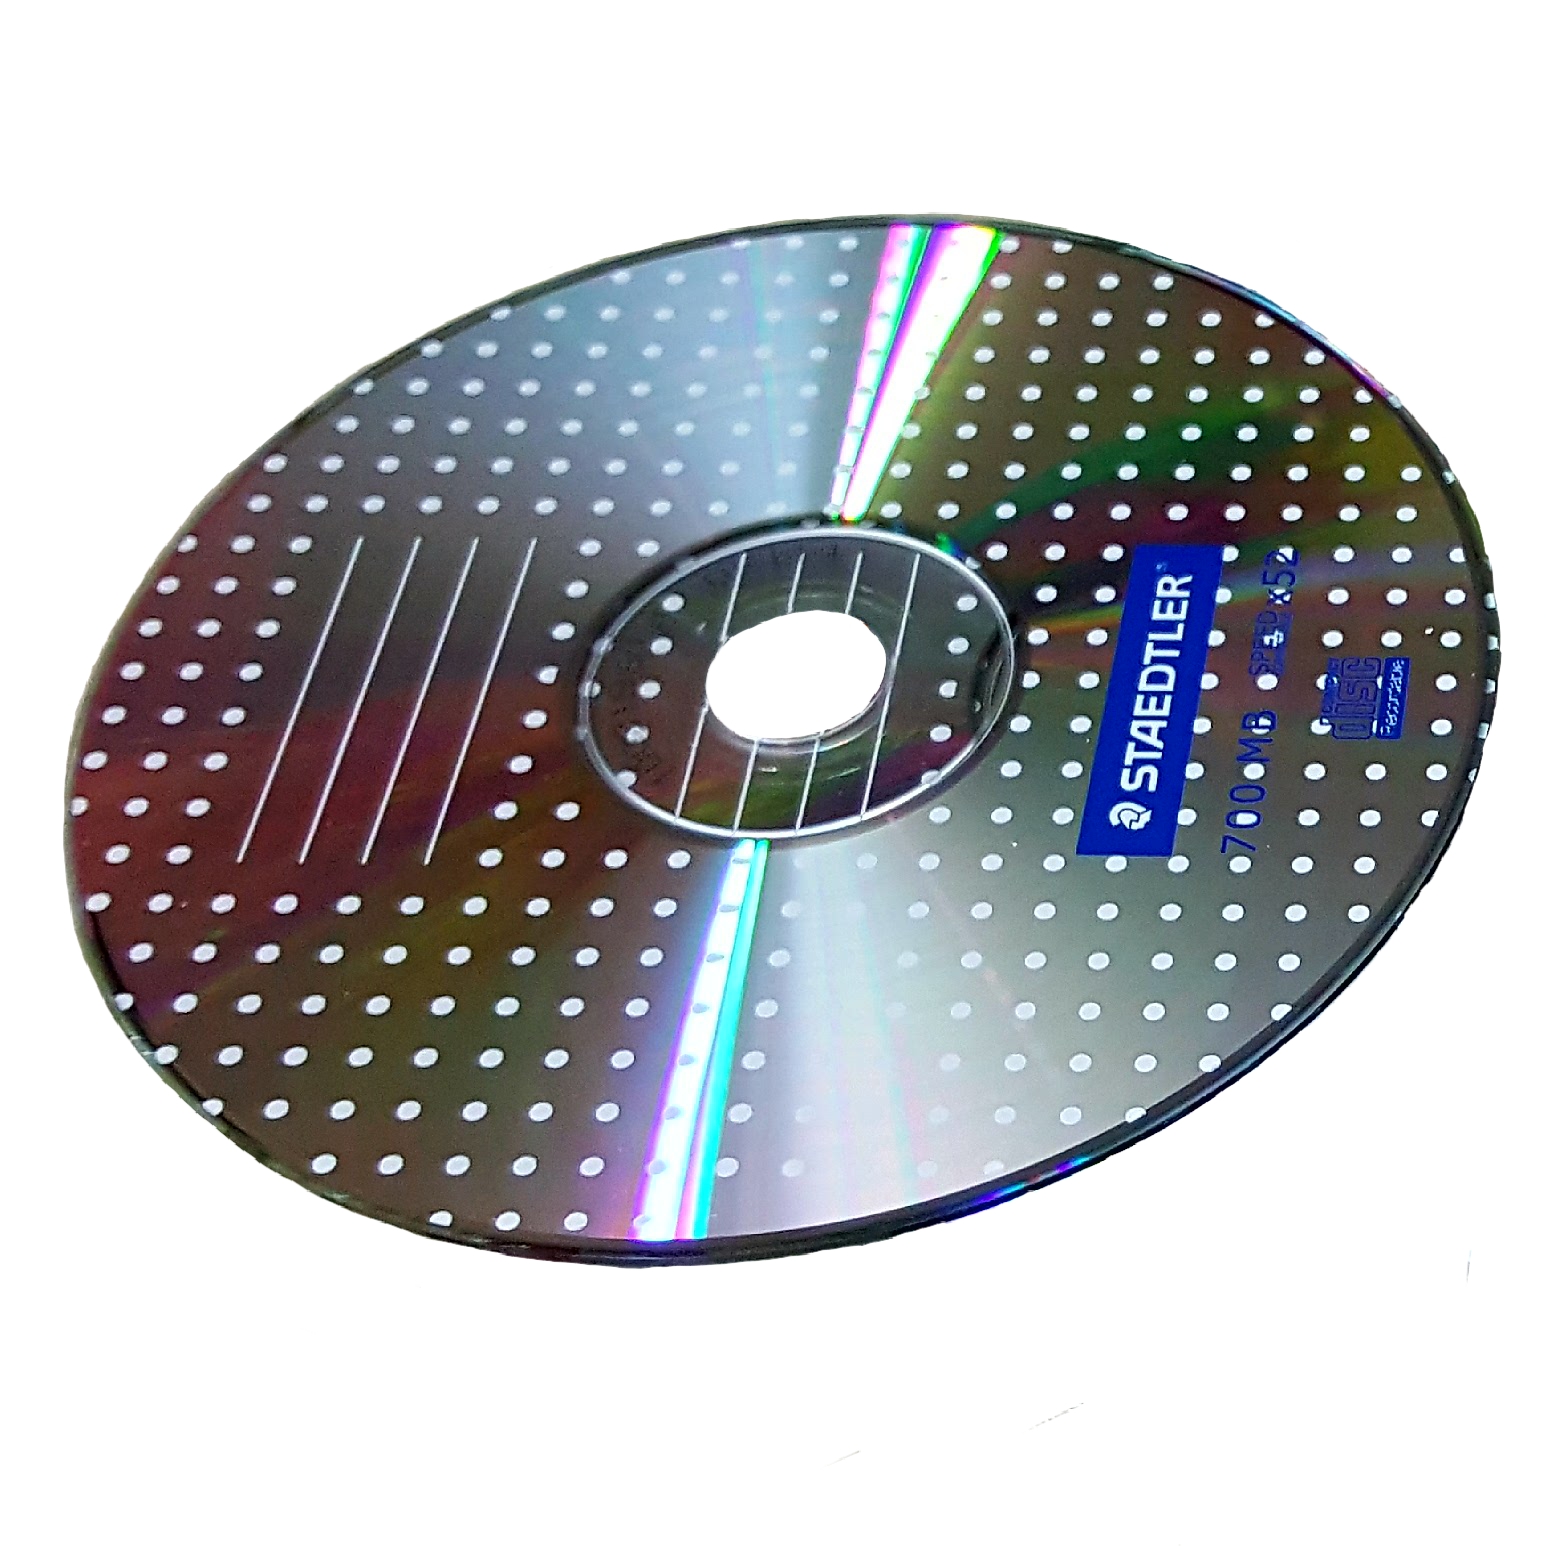 سی دی خام مدل CD-R 700MB بسته 5 عددی